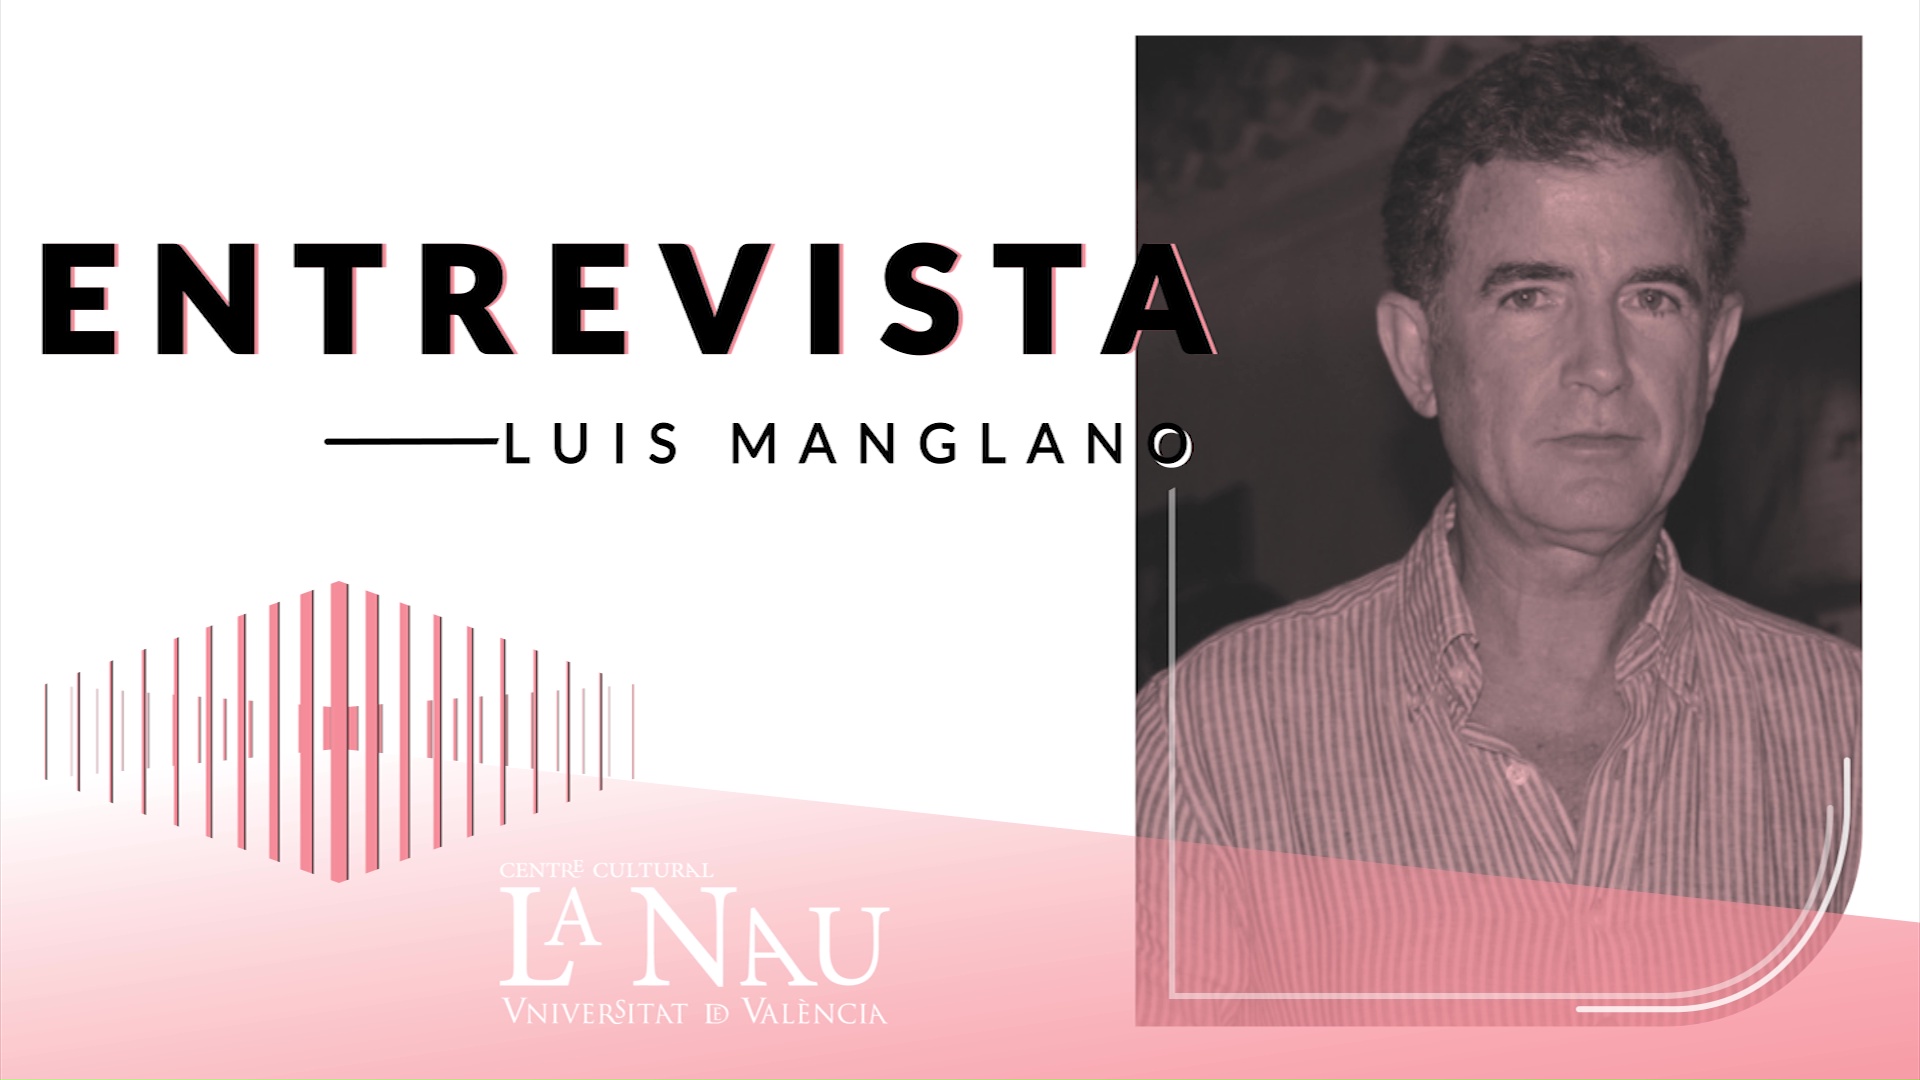 Entrevista a La Nau. Luis Manglano